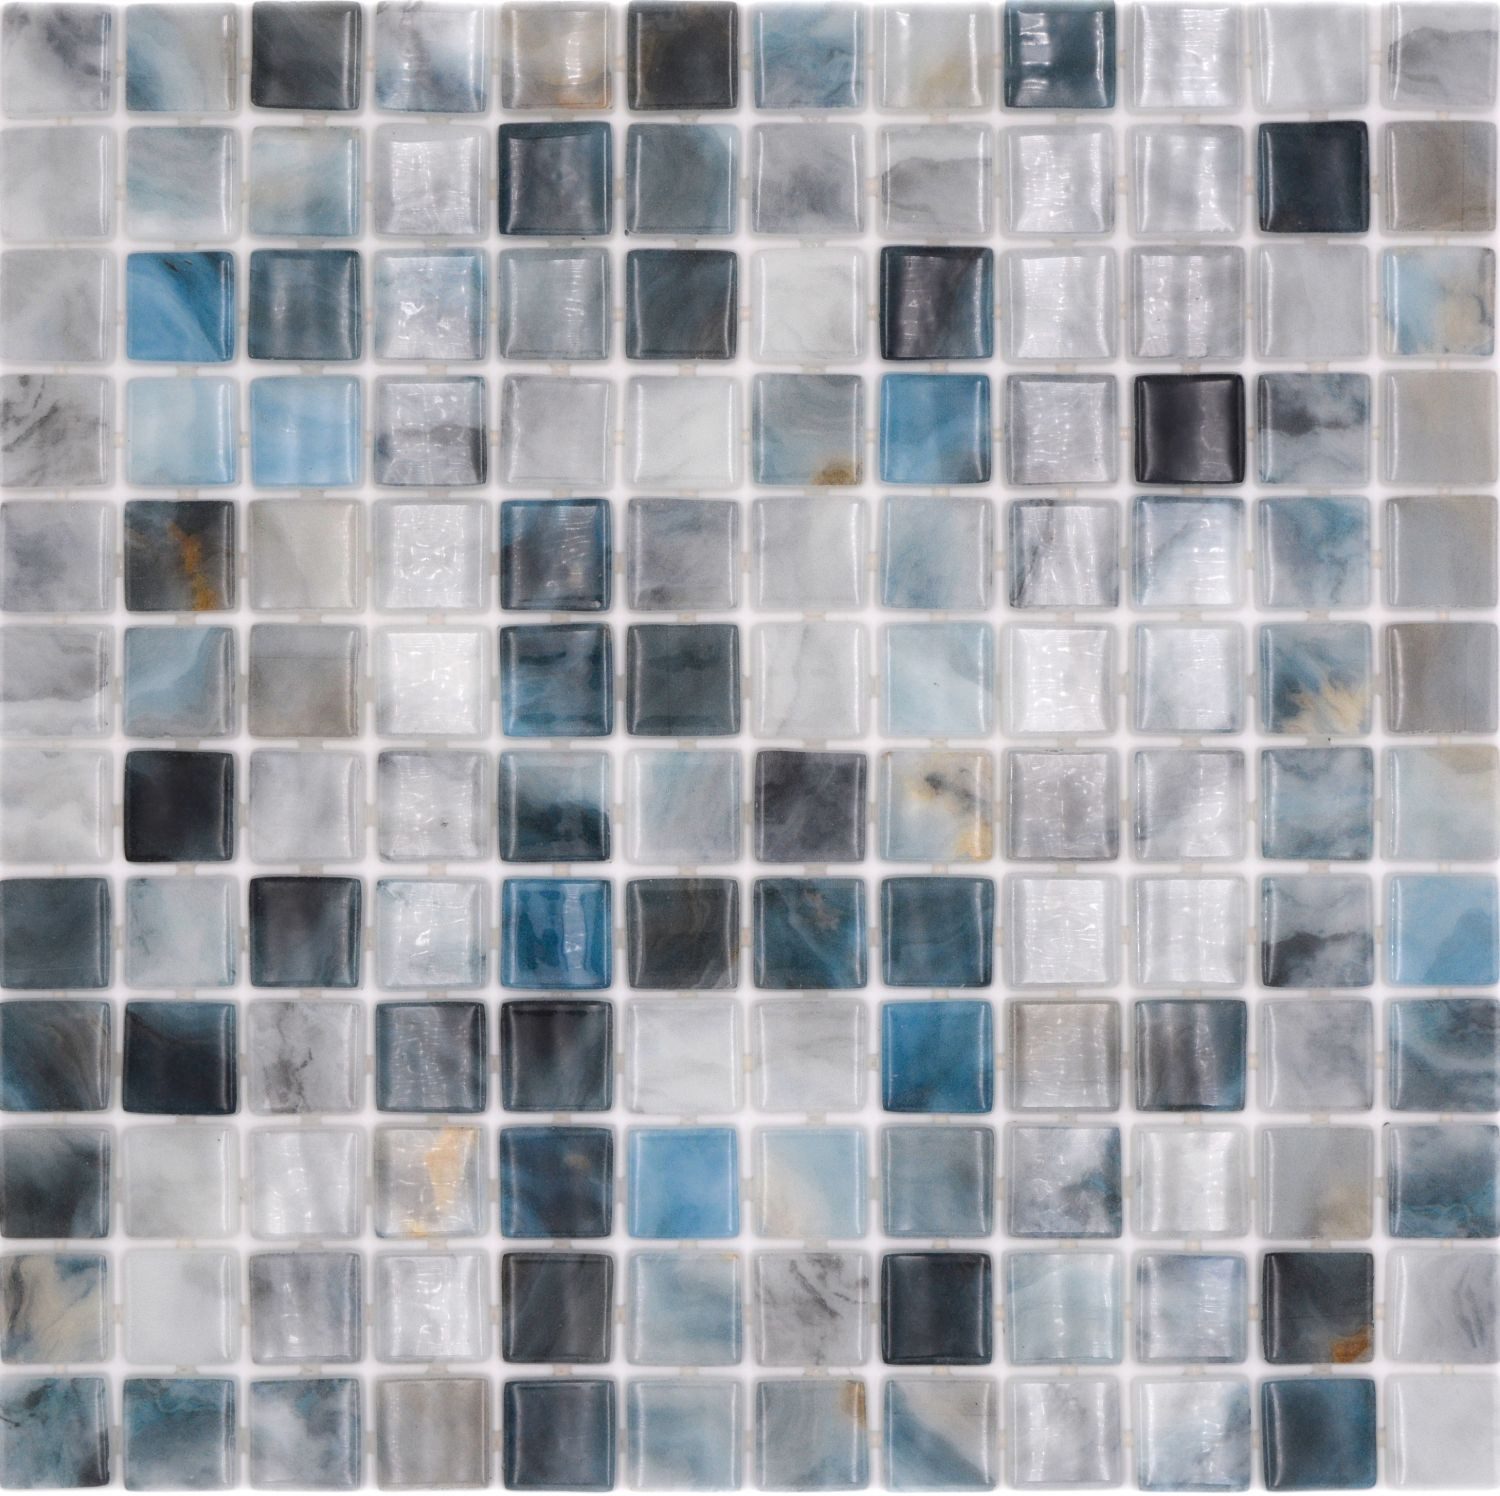 Mosani Mosaikfliesen Schwimmbad Poolmosaik Glasmosaik grau anthrazit changierend